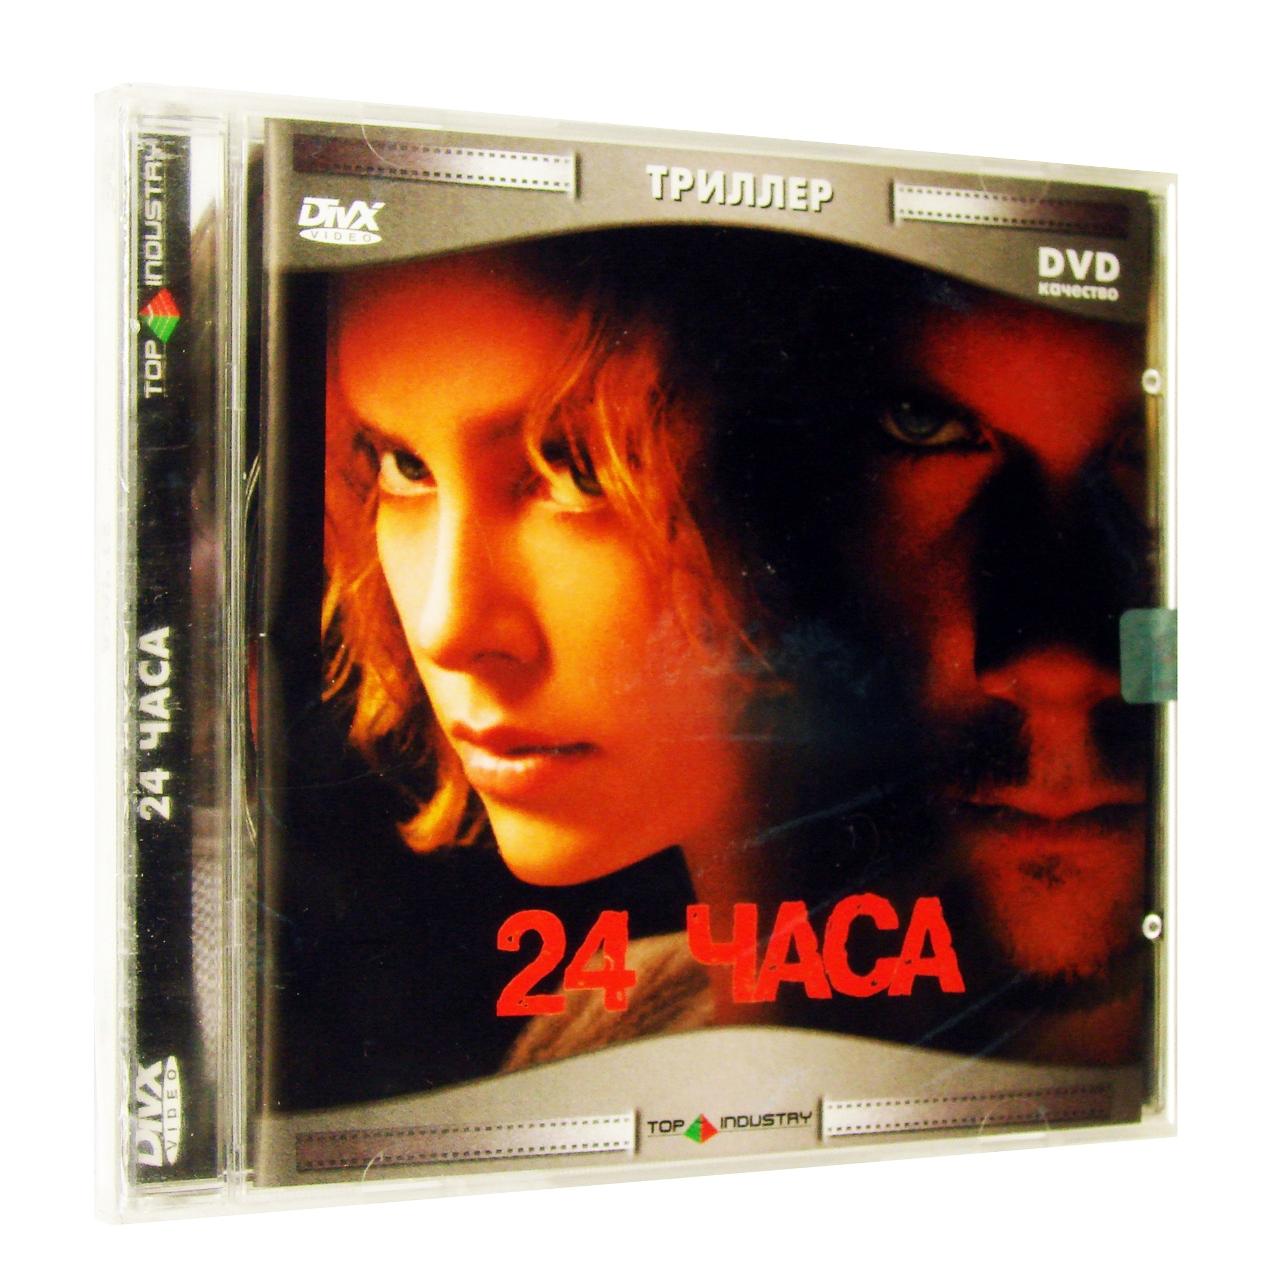 Компьютерный компакт-диск 24 часа (ПК), фирма "Top Industry", 1CD